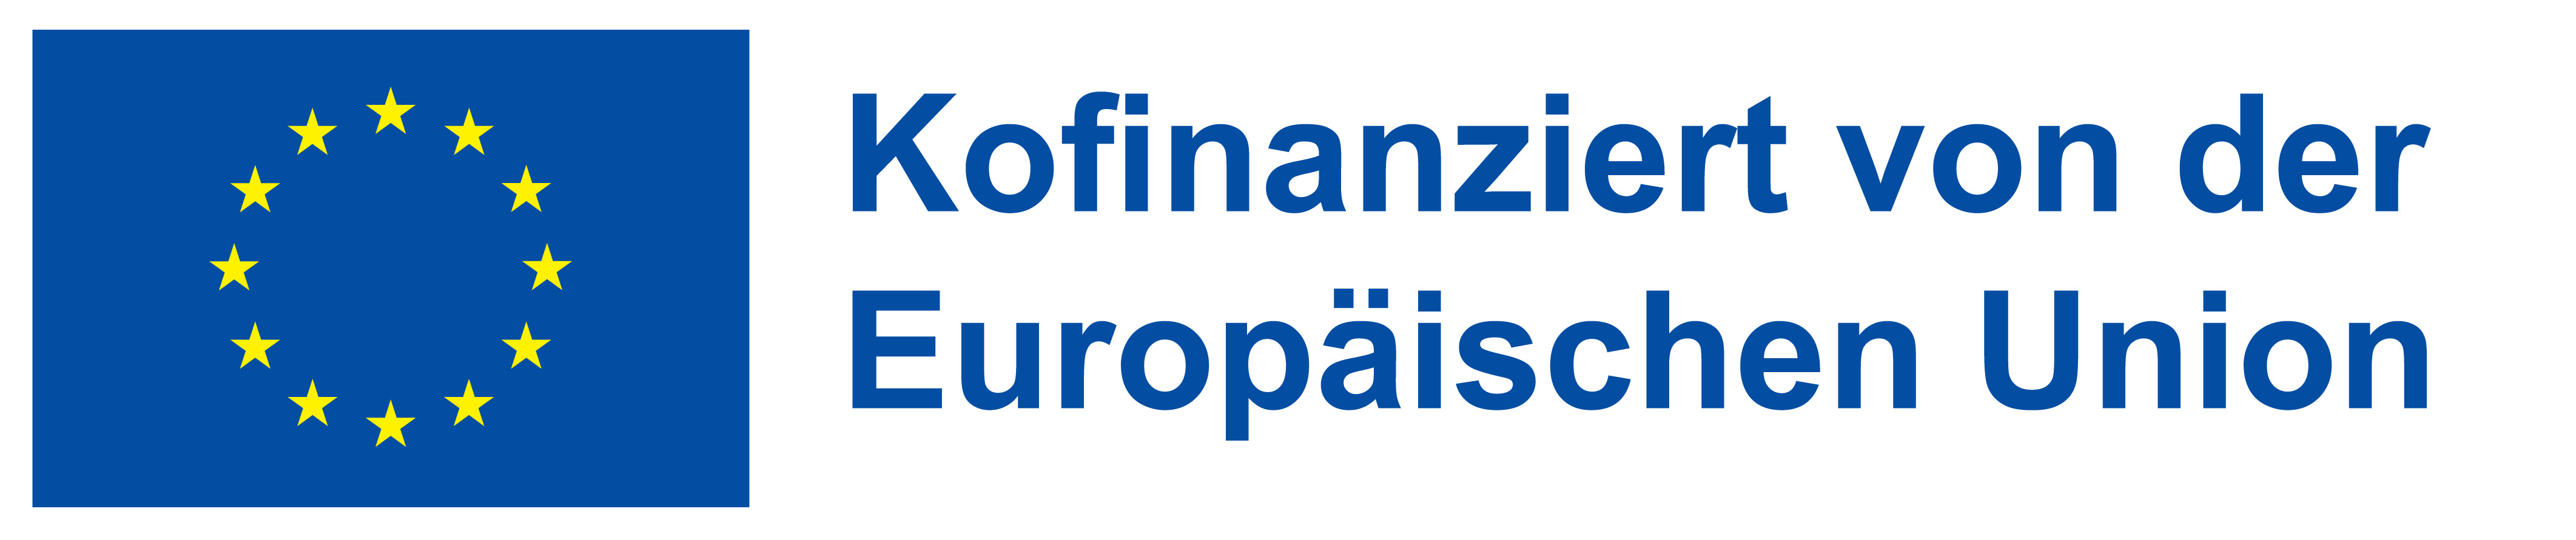 Logo EFRE - Kofinanziert von der Europäischen Union